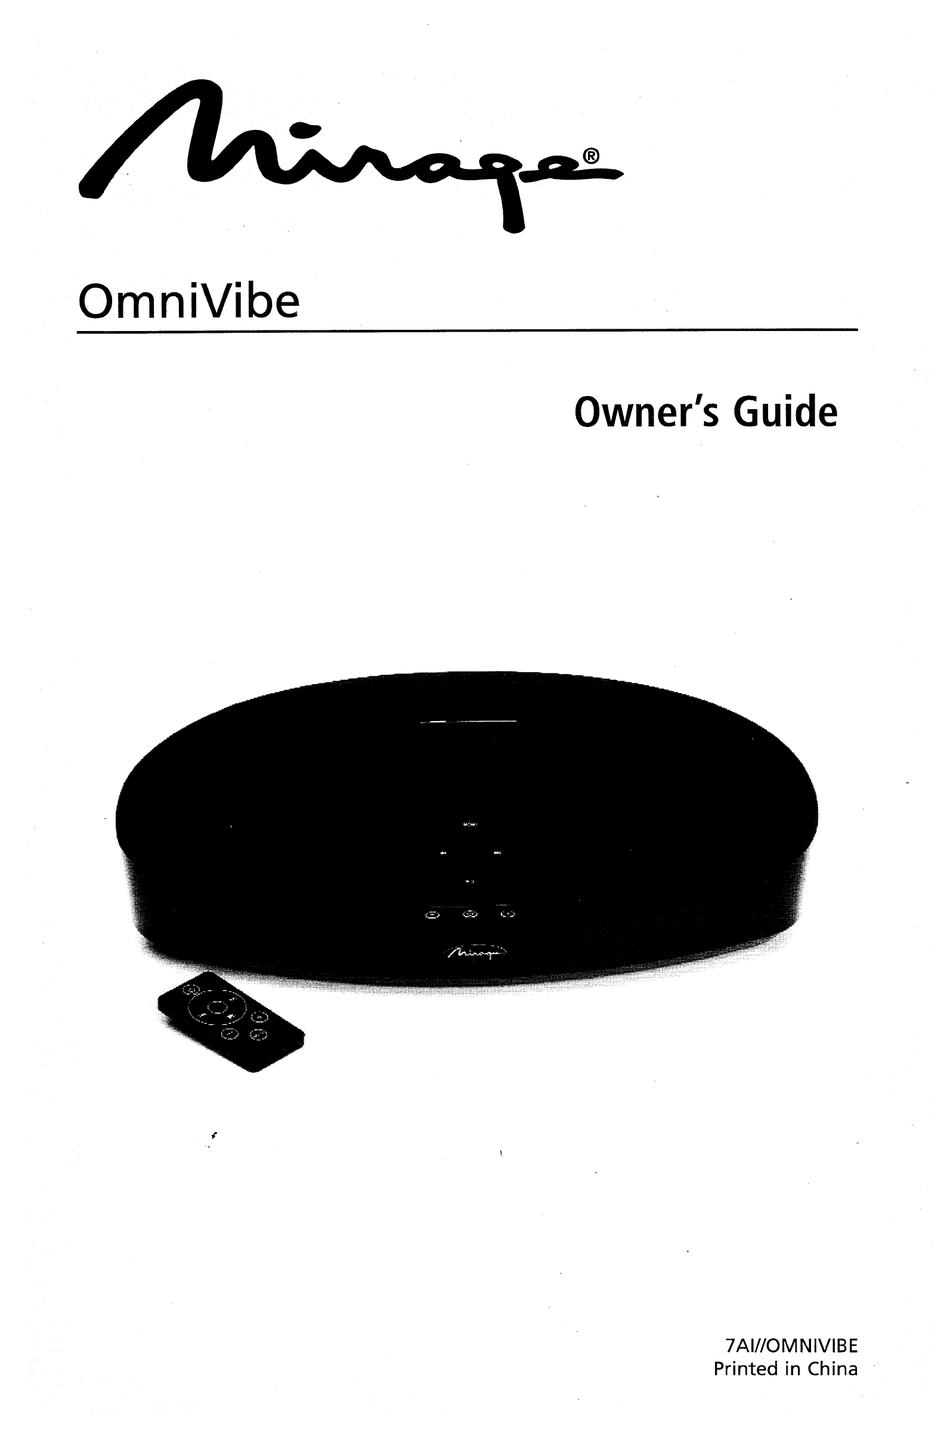 mirage om 6 speakers manual